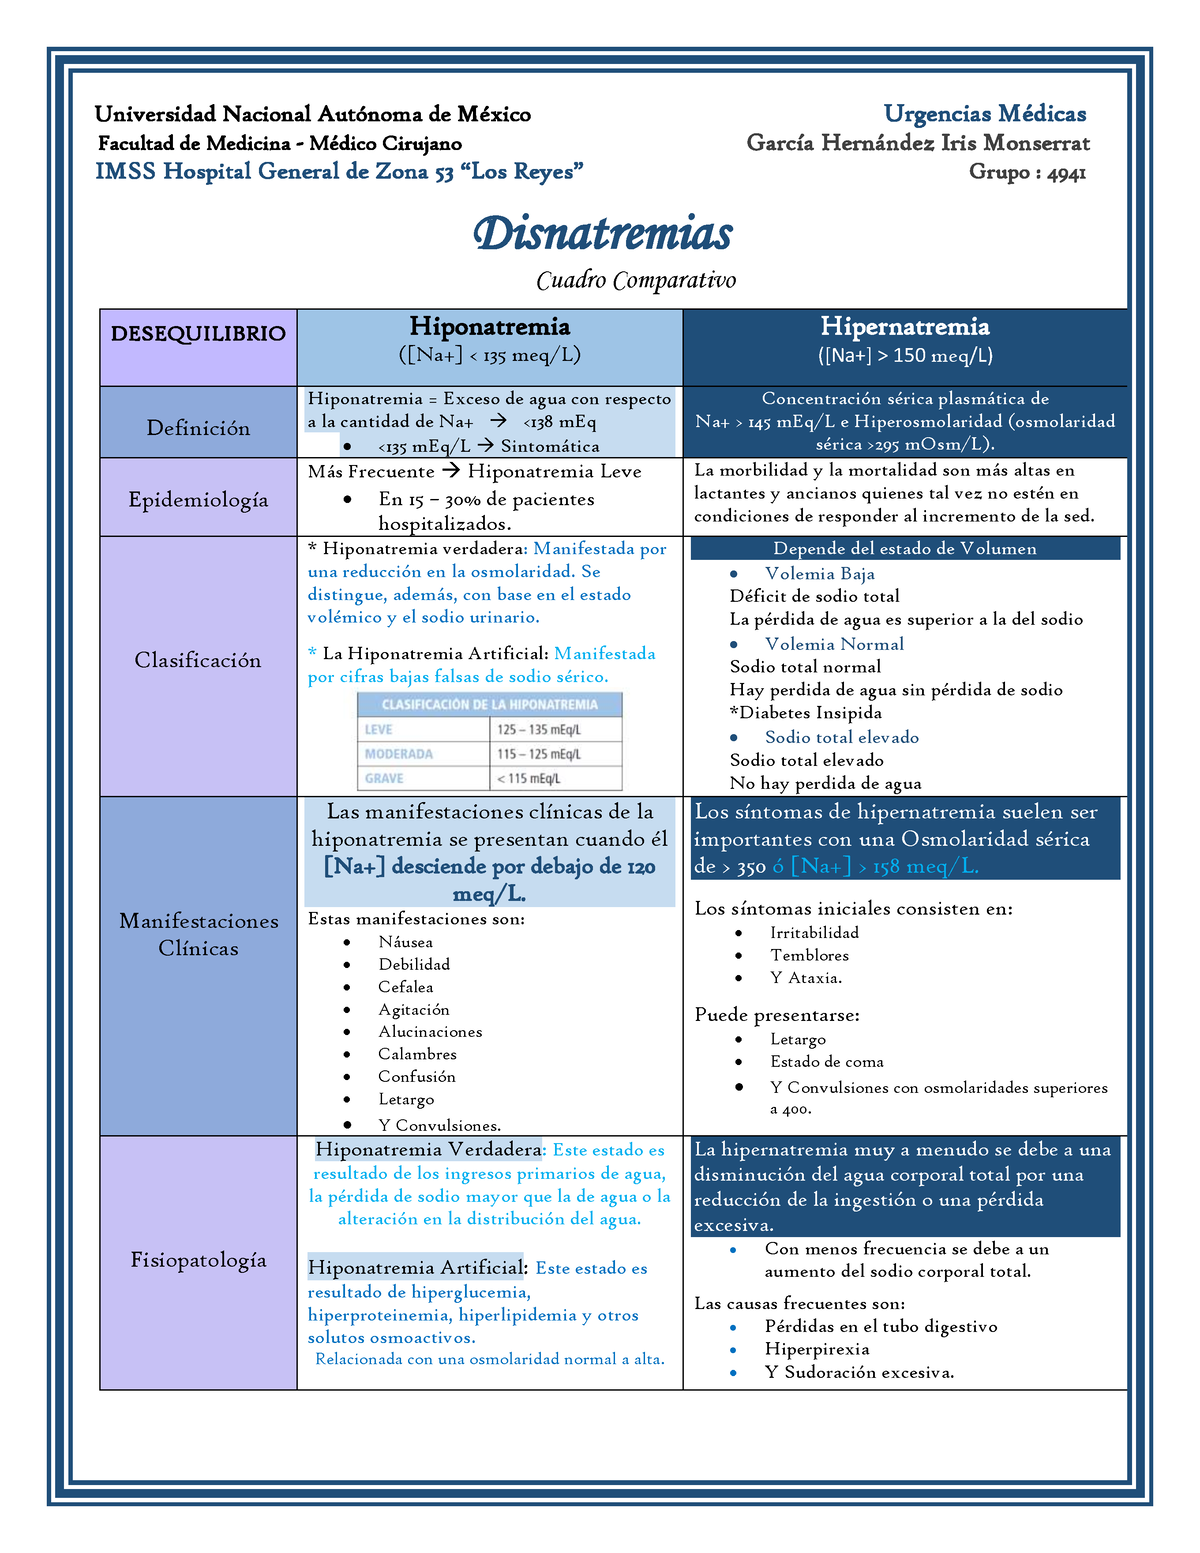 Disnatremias (Garcia Hernandez Iris Monserrat 4941) - Urgencias - UNAM ...